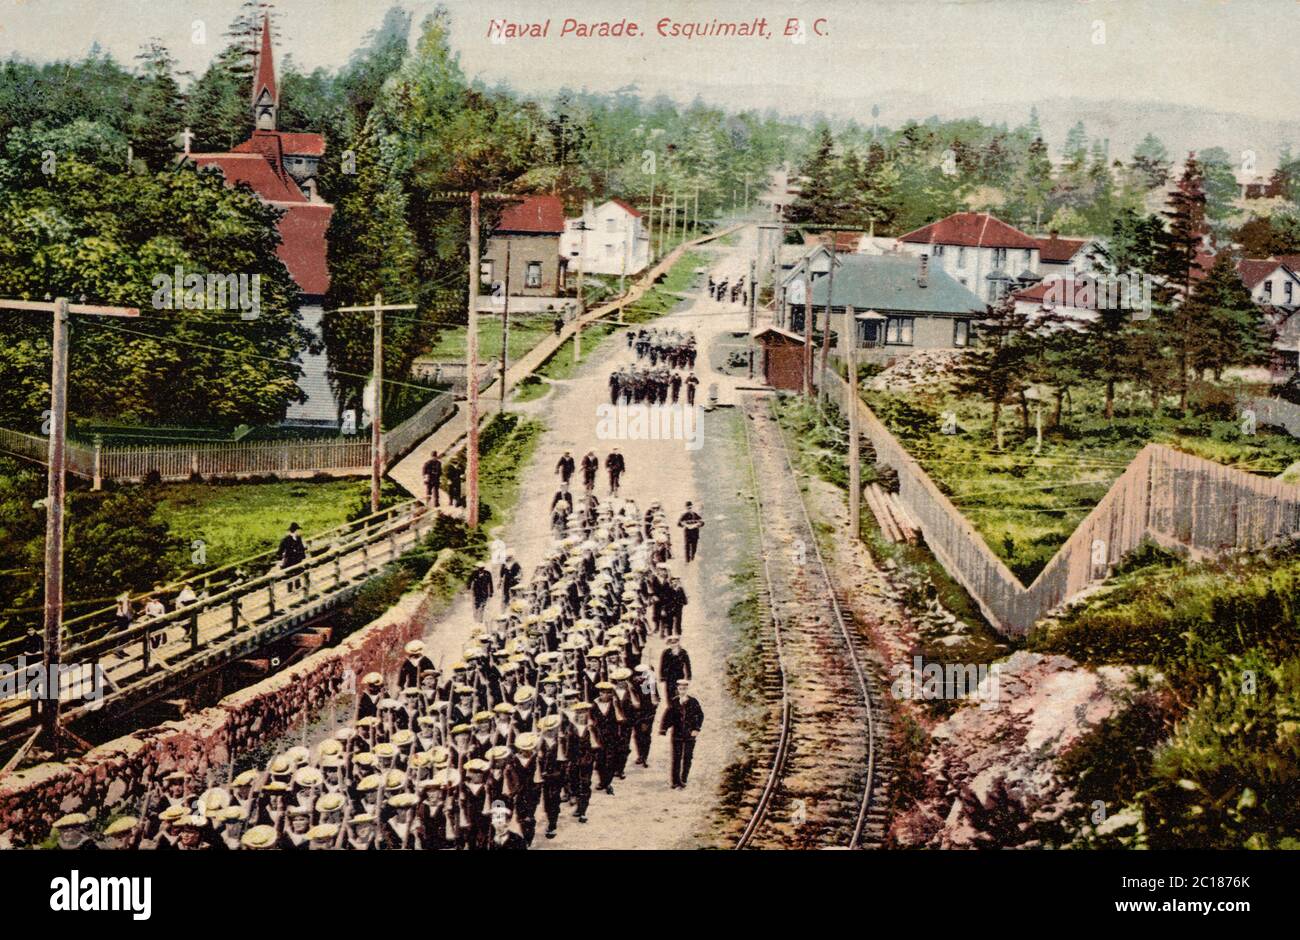 Défilé naval, Esquimalt BC Canada, ancienne carte postale Banque D'Images